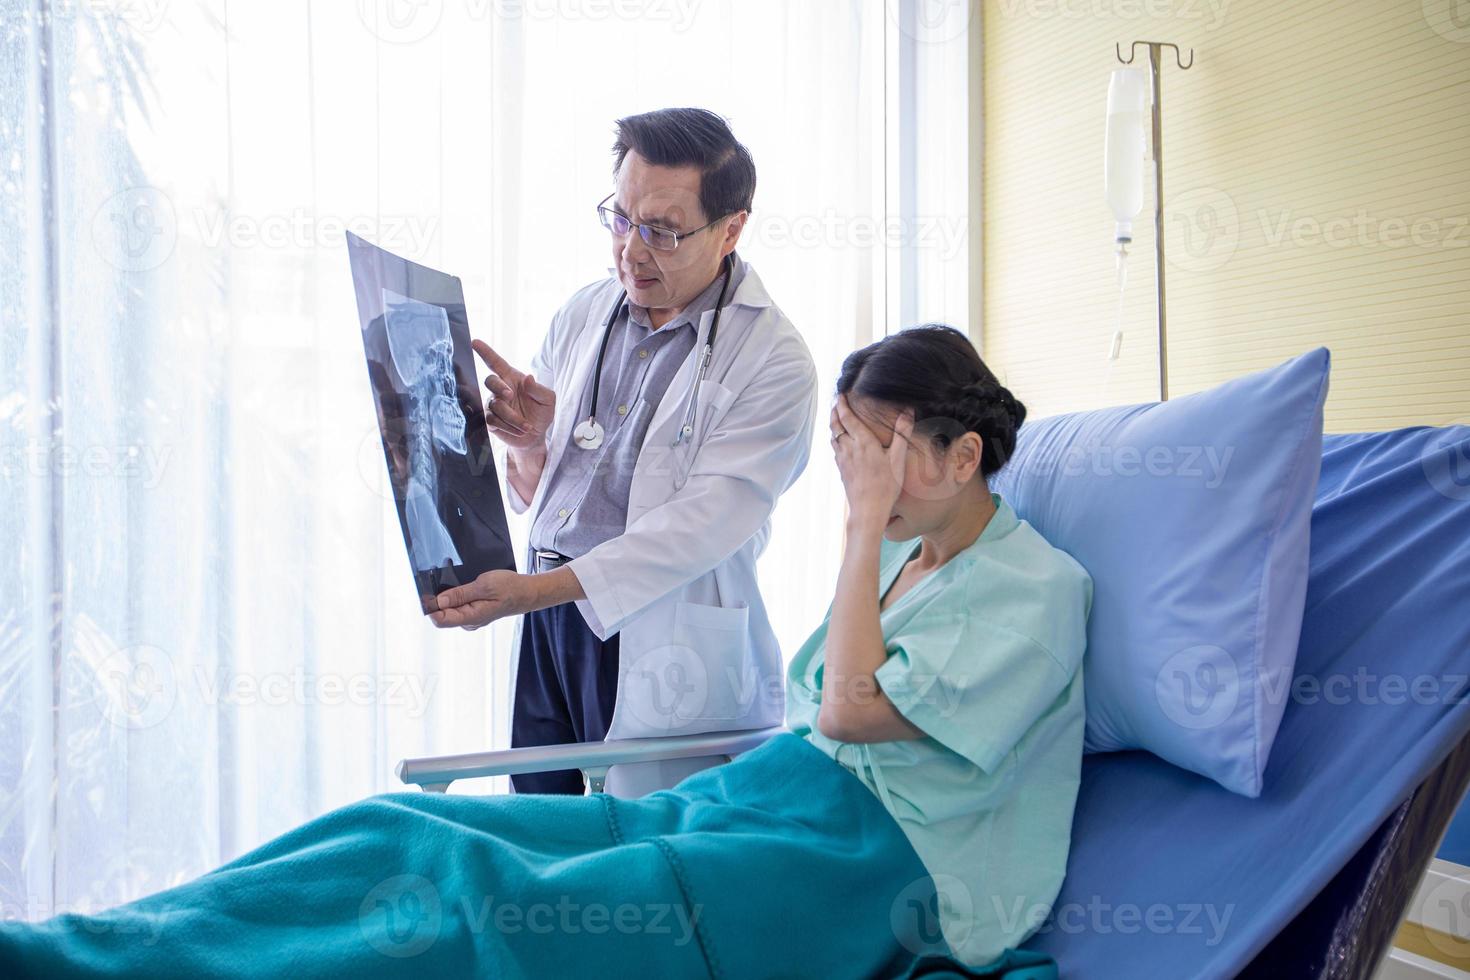 le médecin explique les résultats des radiographies cérébrales à une patiente allongée dans son lit dans un hôpital photo